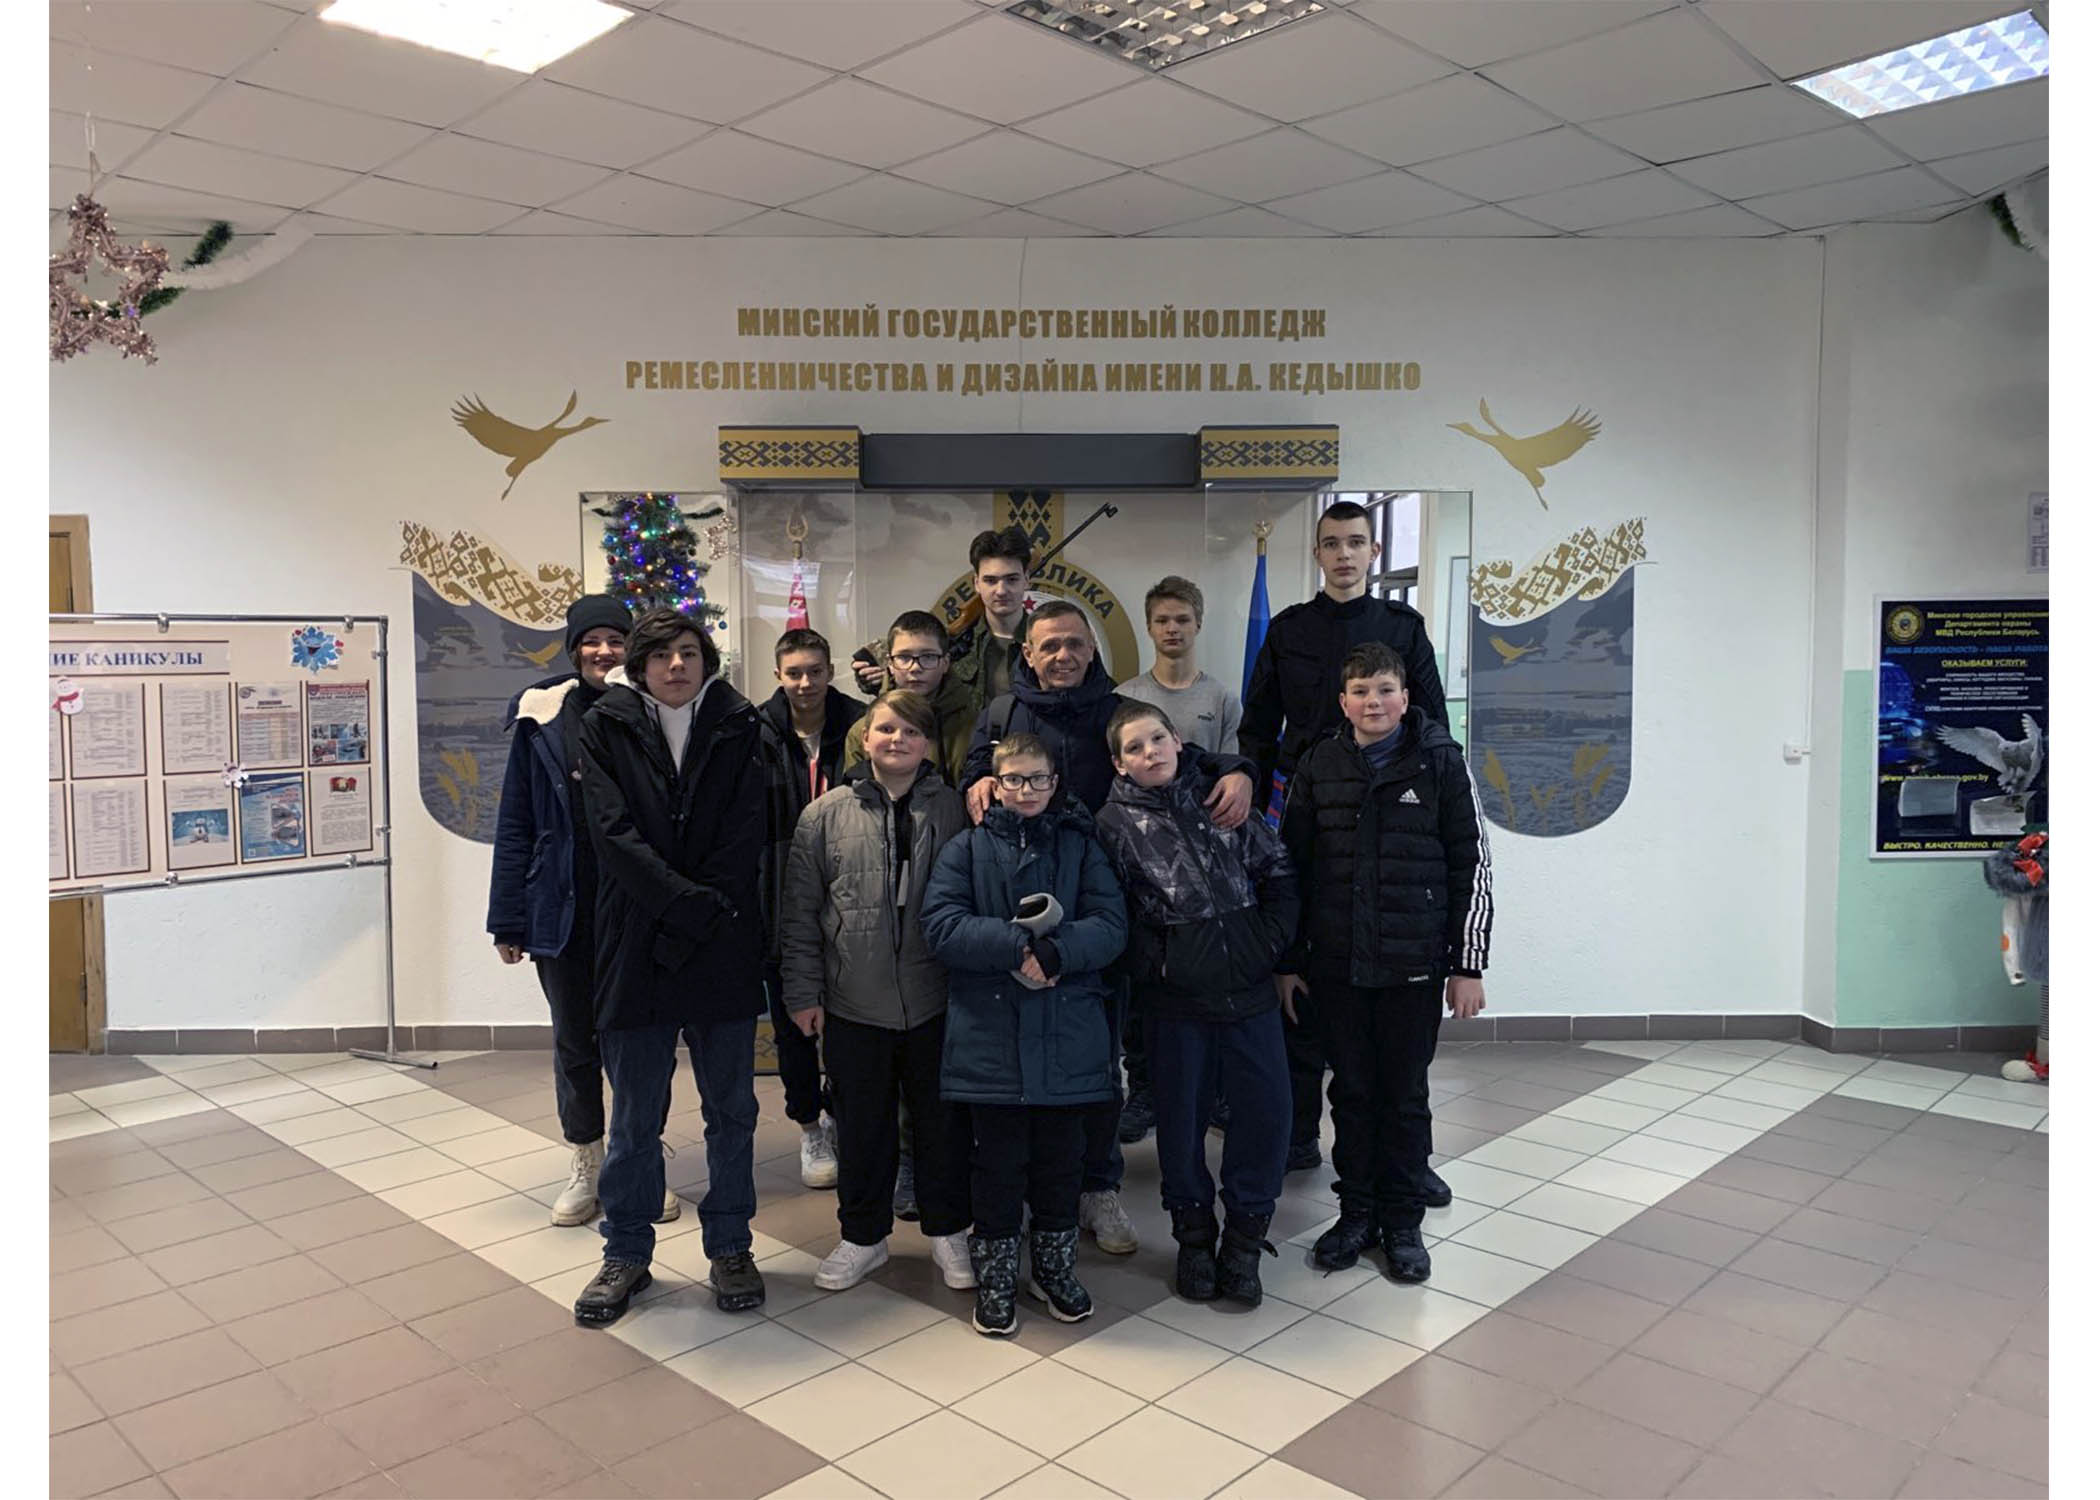 4 января, в дни зимних каникул,  в учреждении образования прошло открытое занятие в тире для учащихся колледжа и средней школы №53 г. Минска.